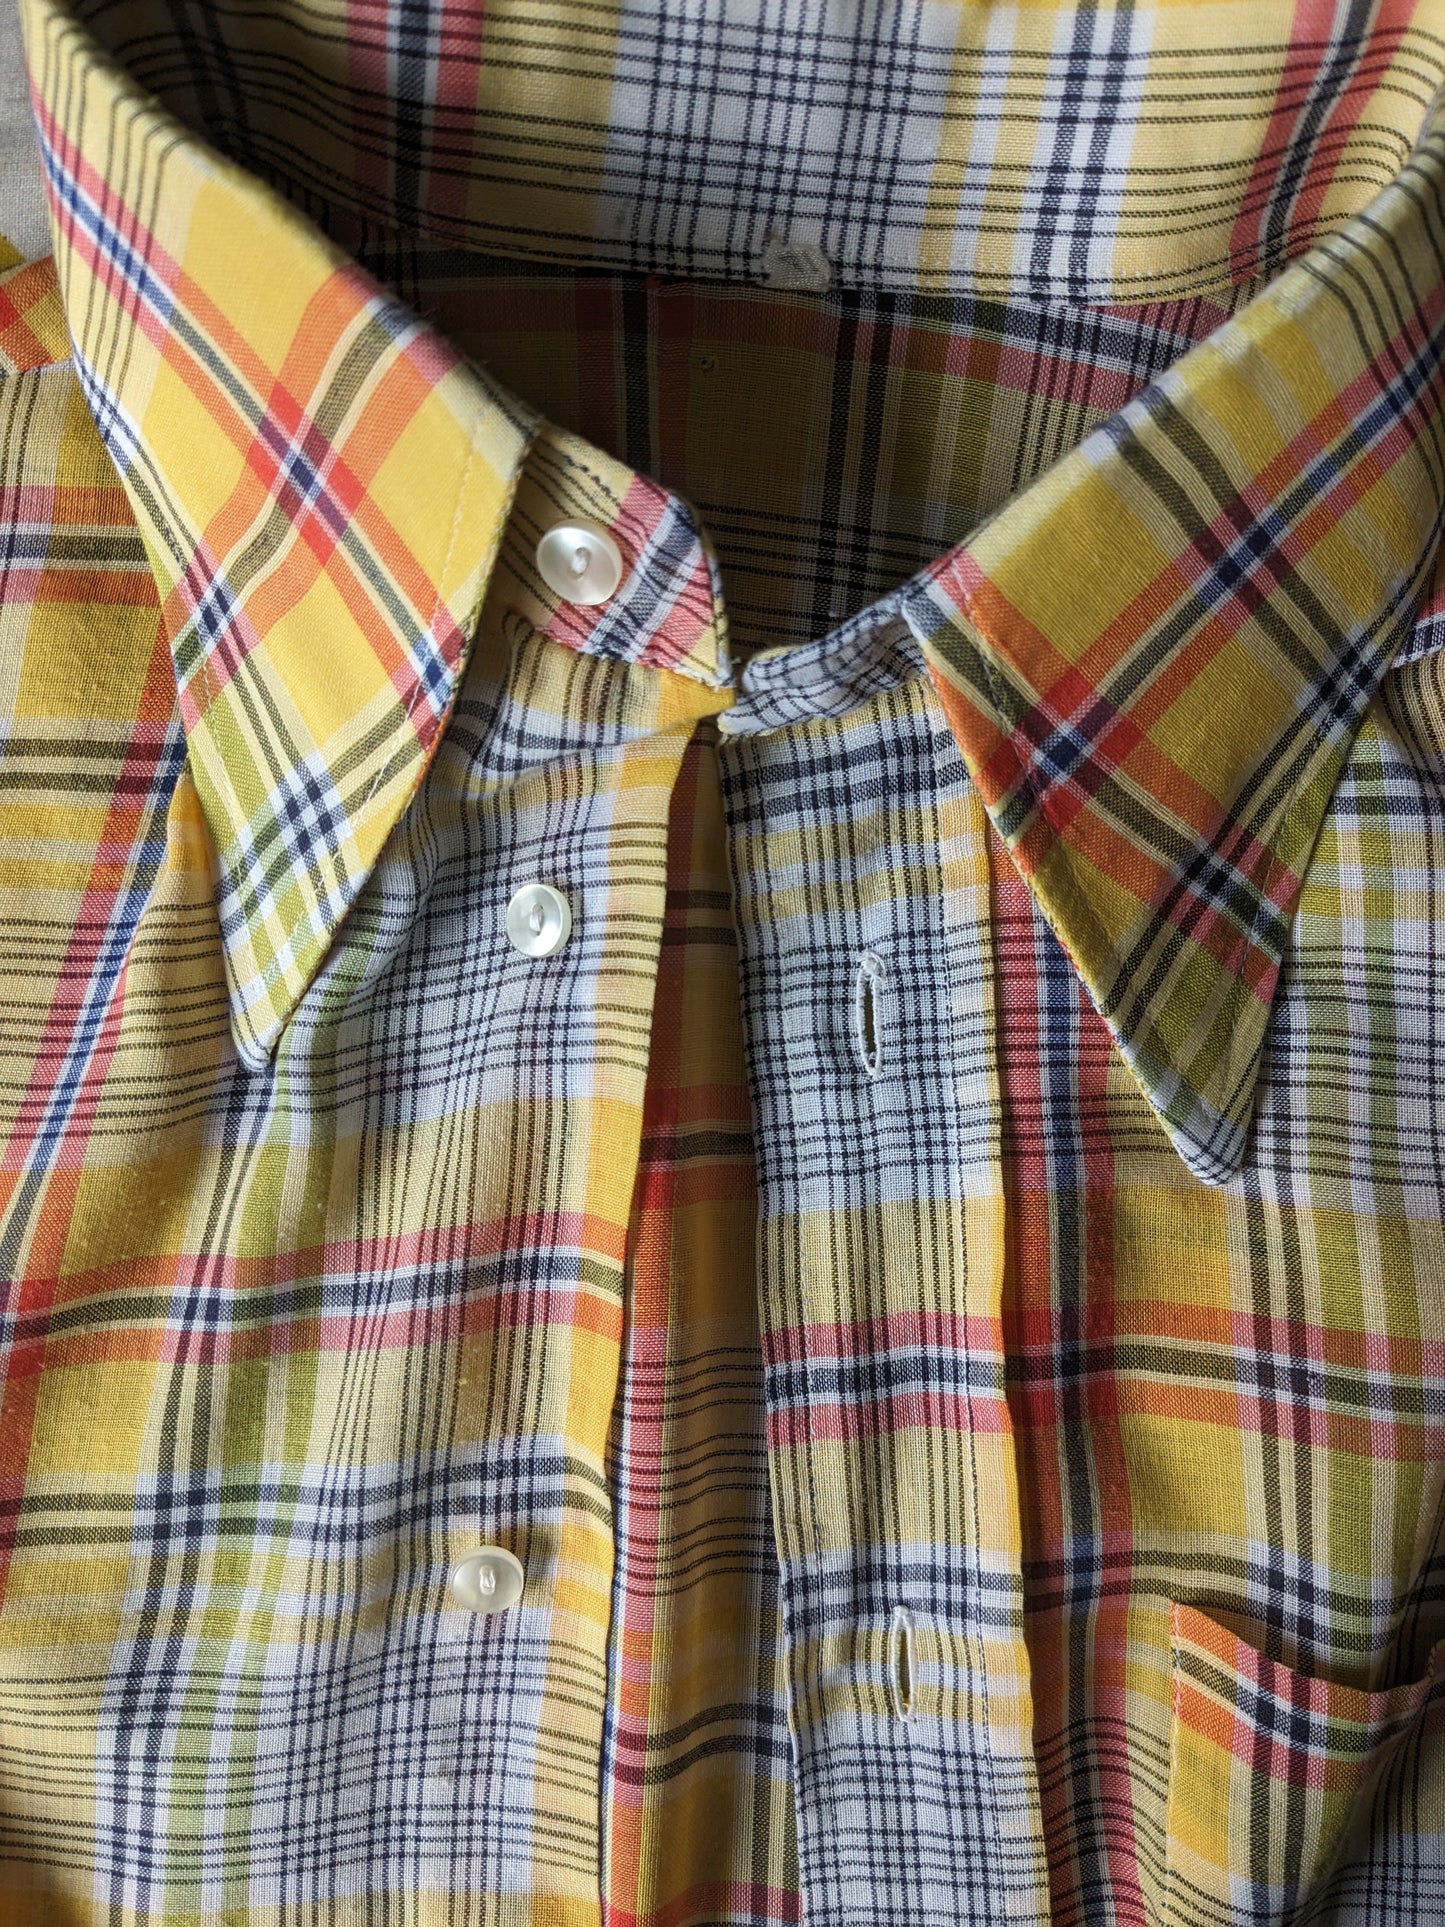 Vintage 70's overhemd korte mouw met puntkraag. Geel Blauw Rood Groen geruit. Maat M.